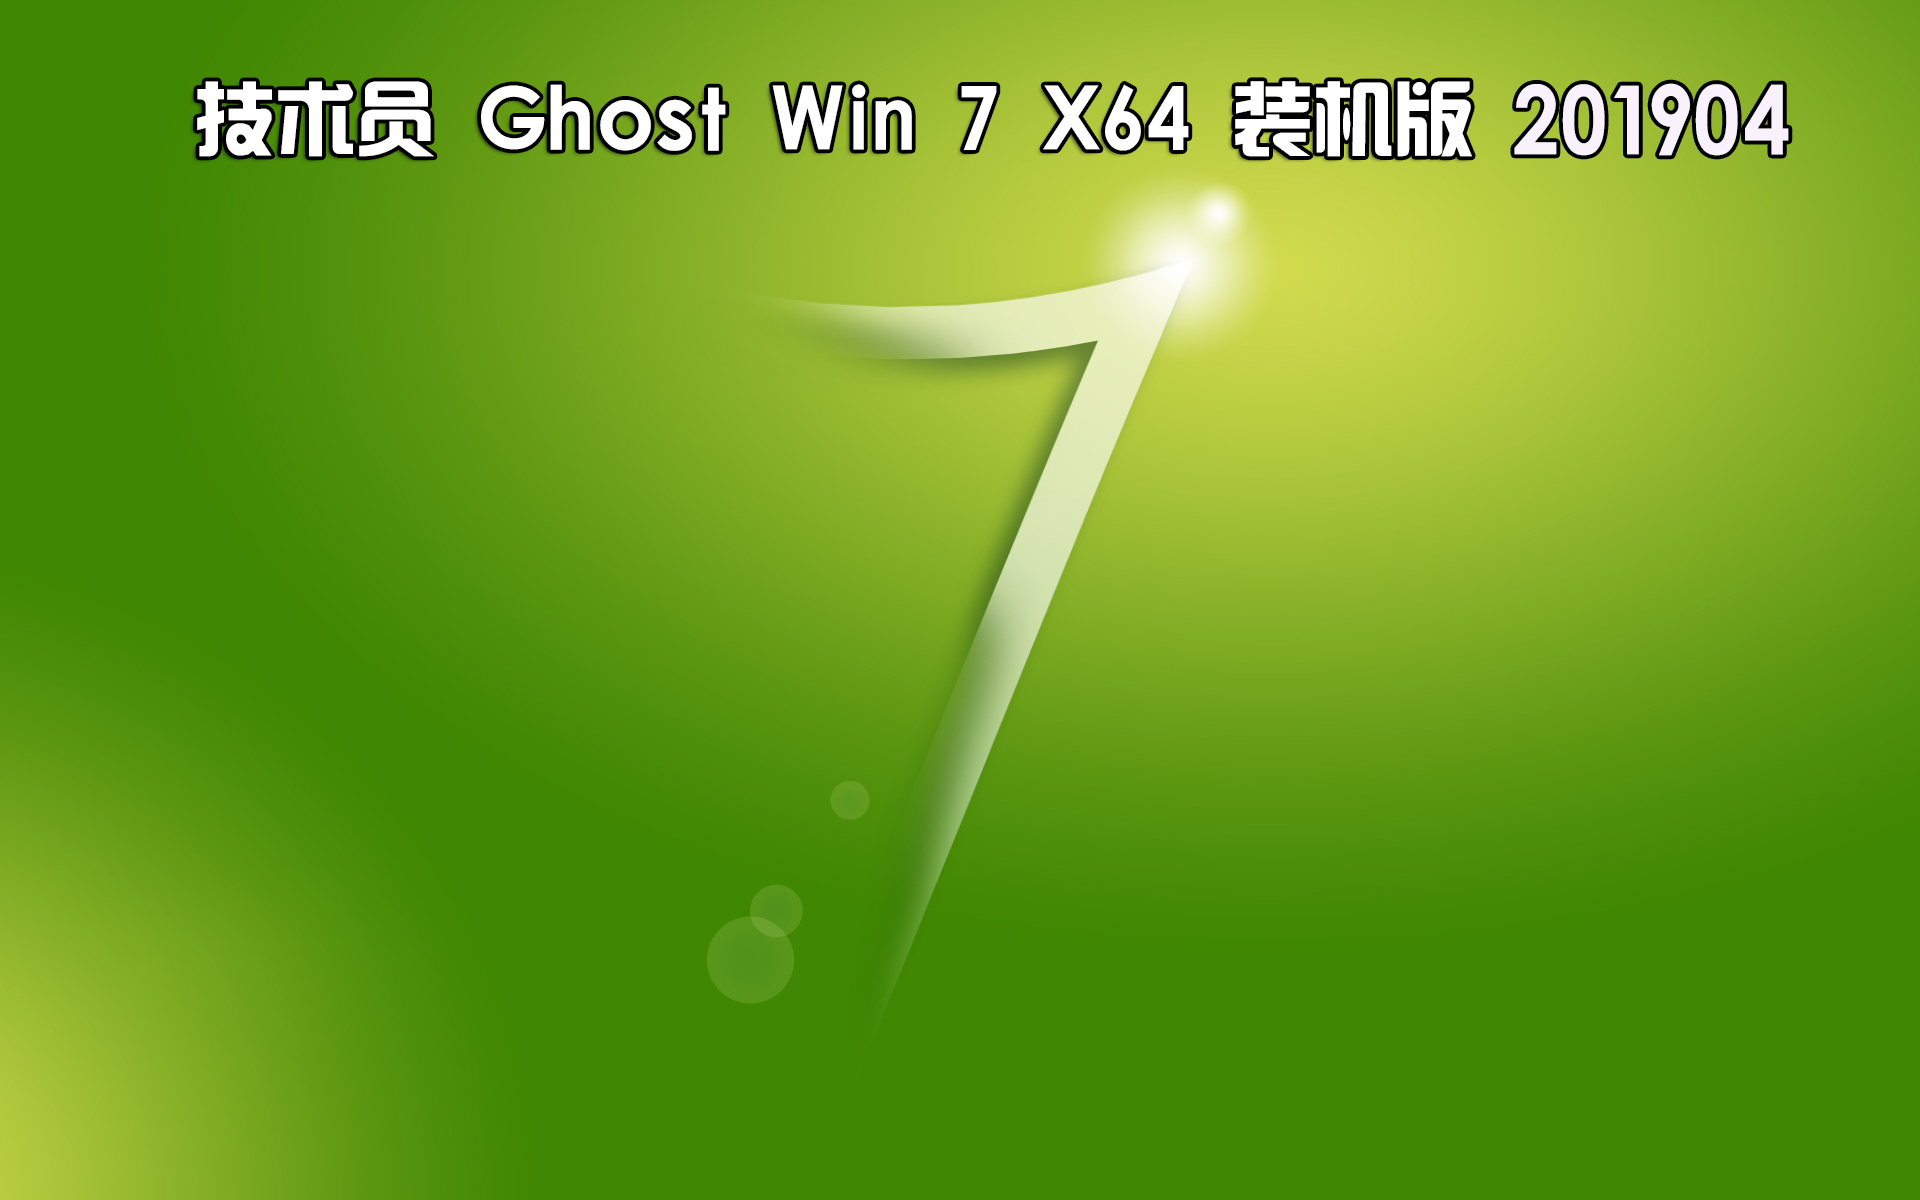 技术员联盟 Ghost Win7 Sp1 x64 装机版